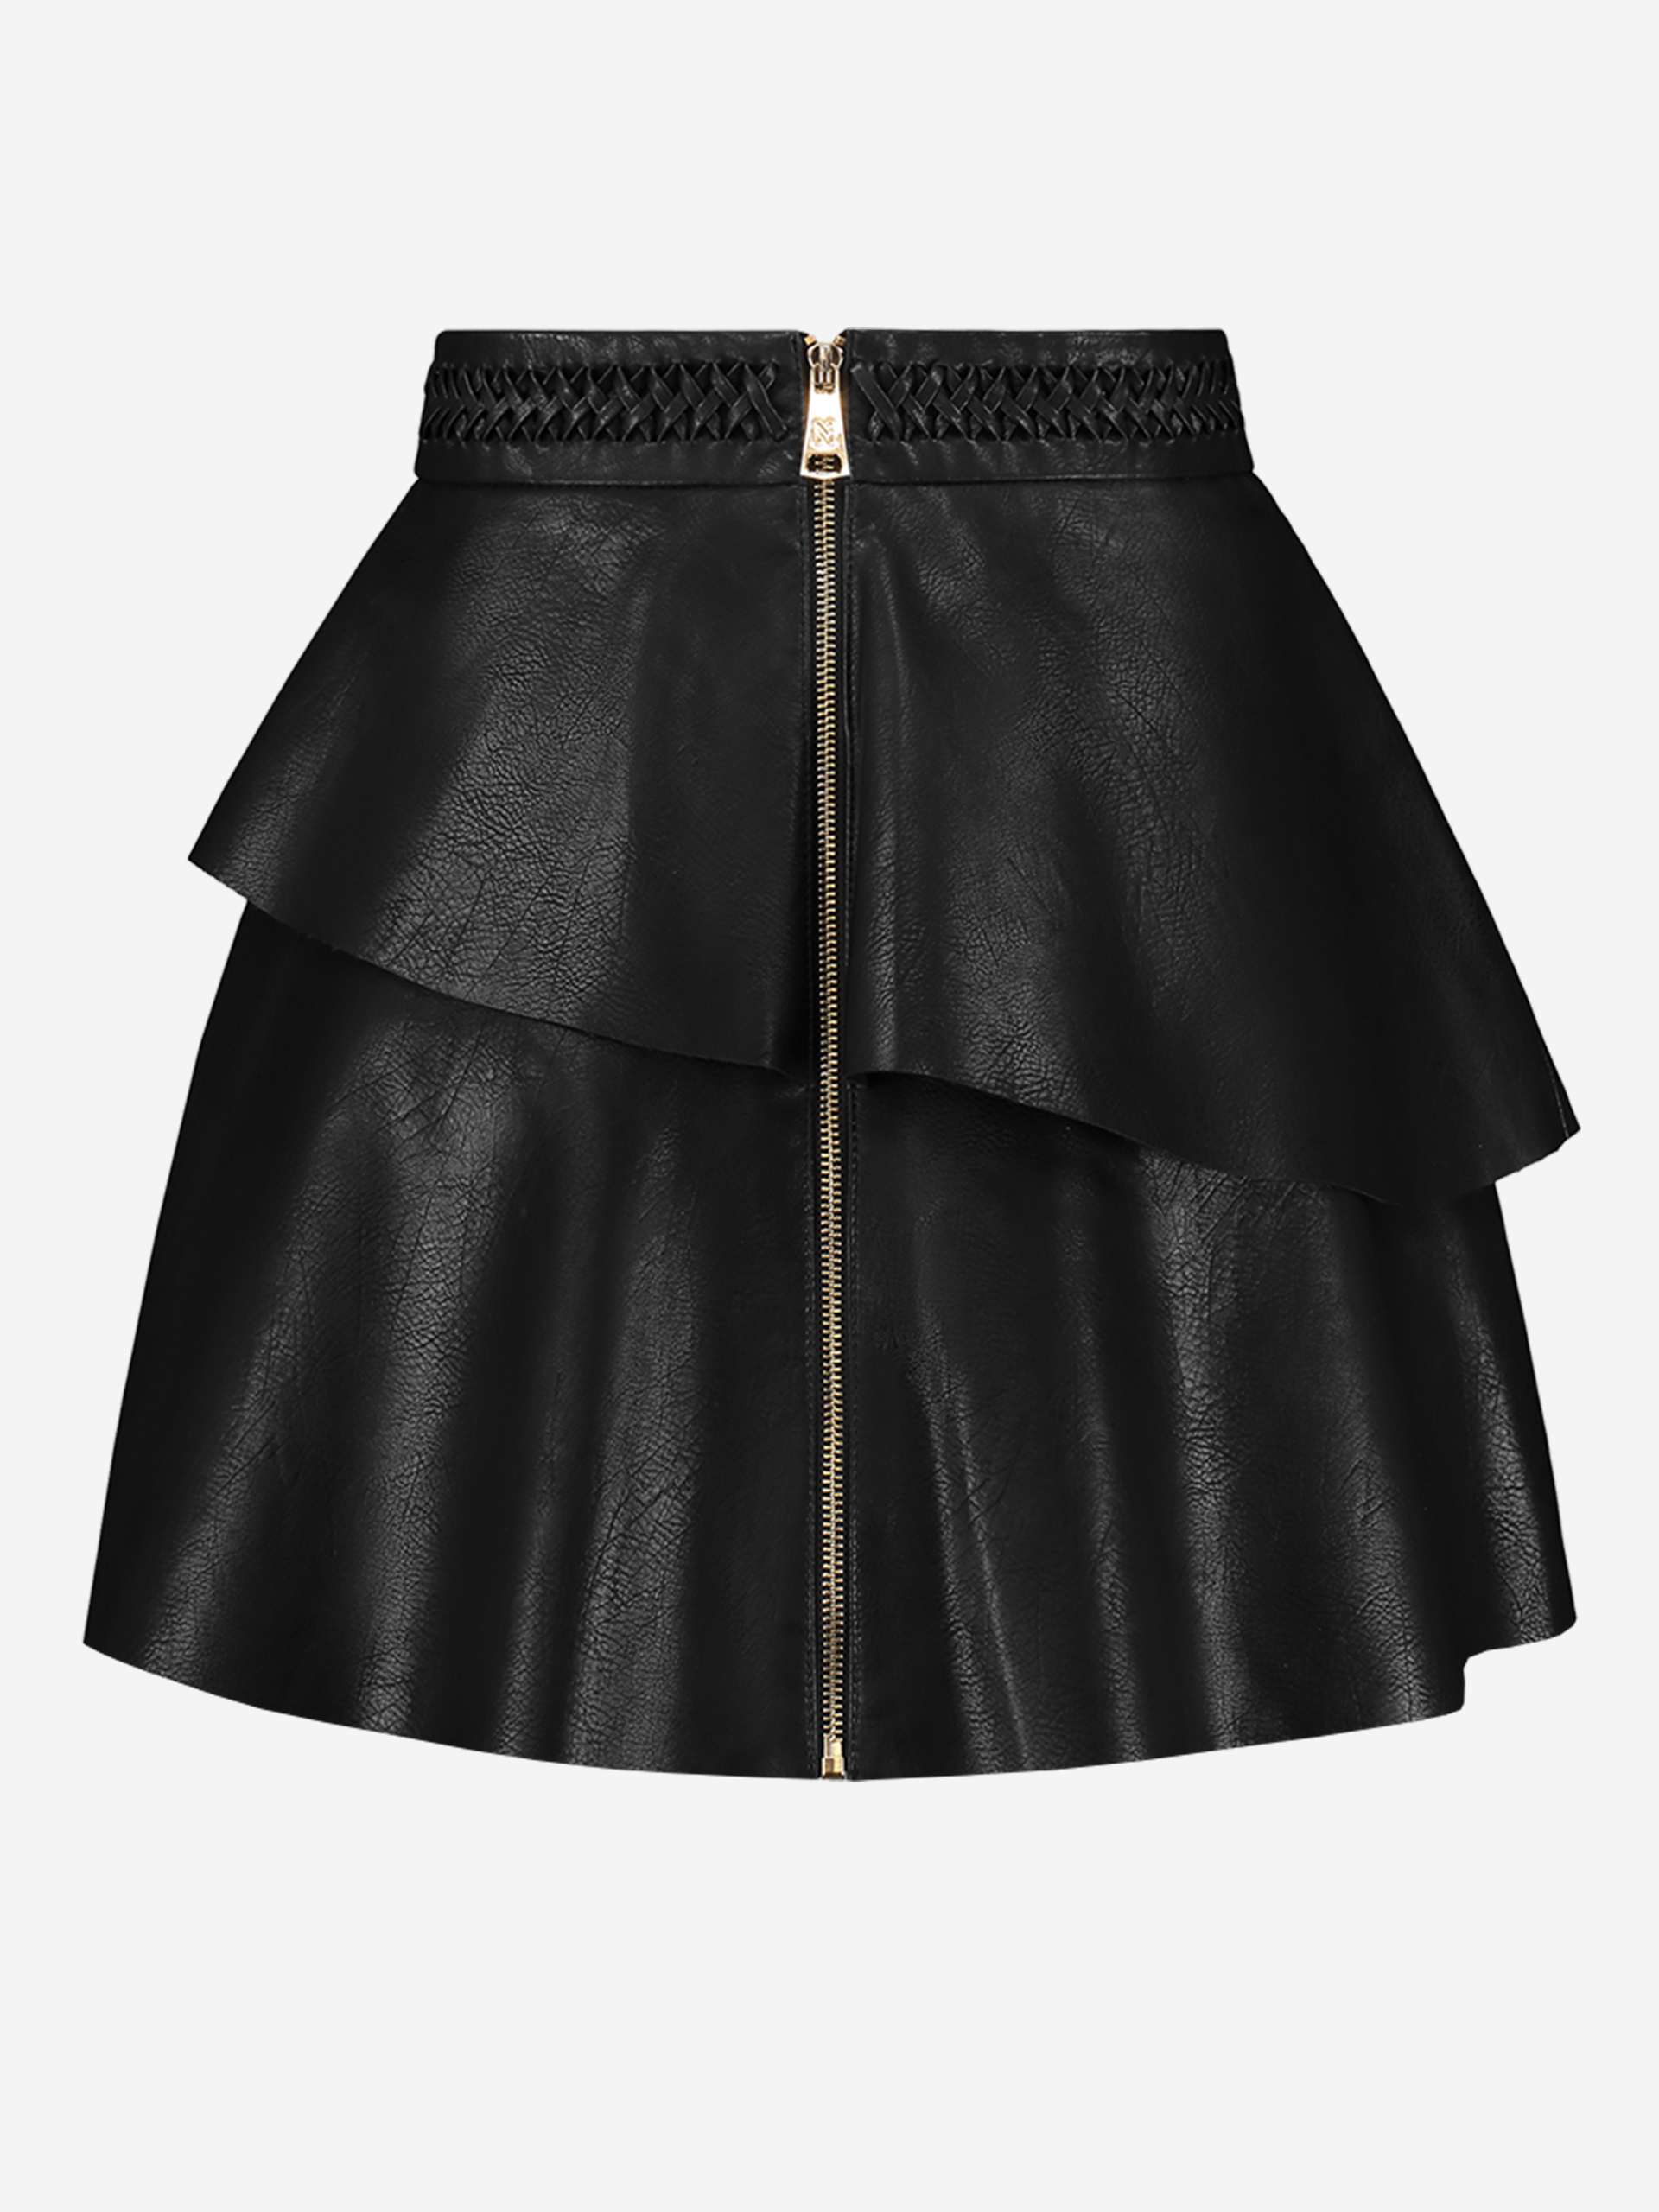 Flared vegan leather skirt